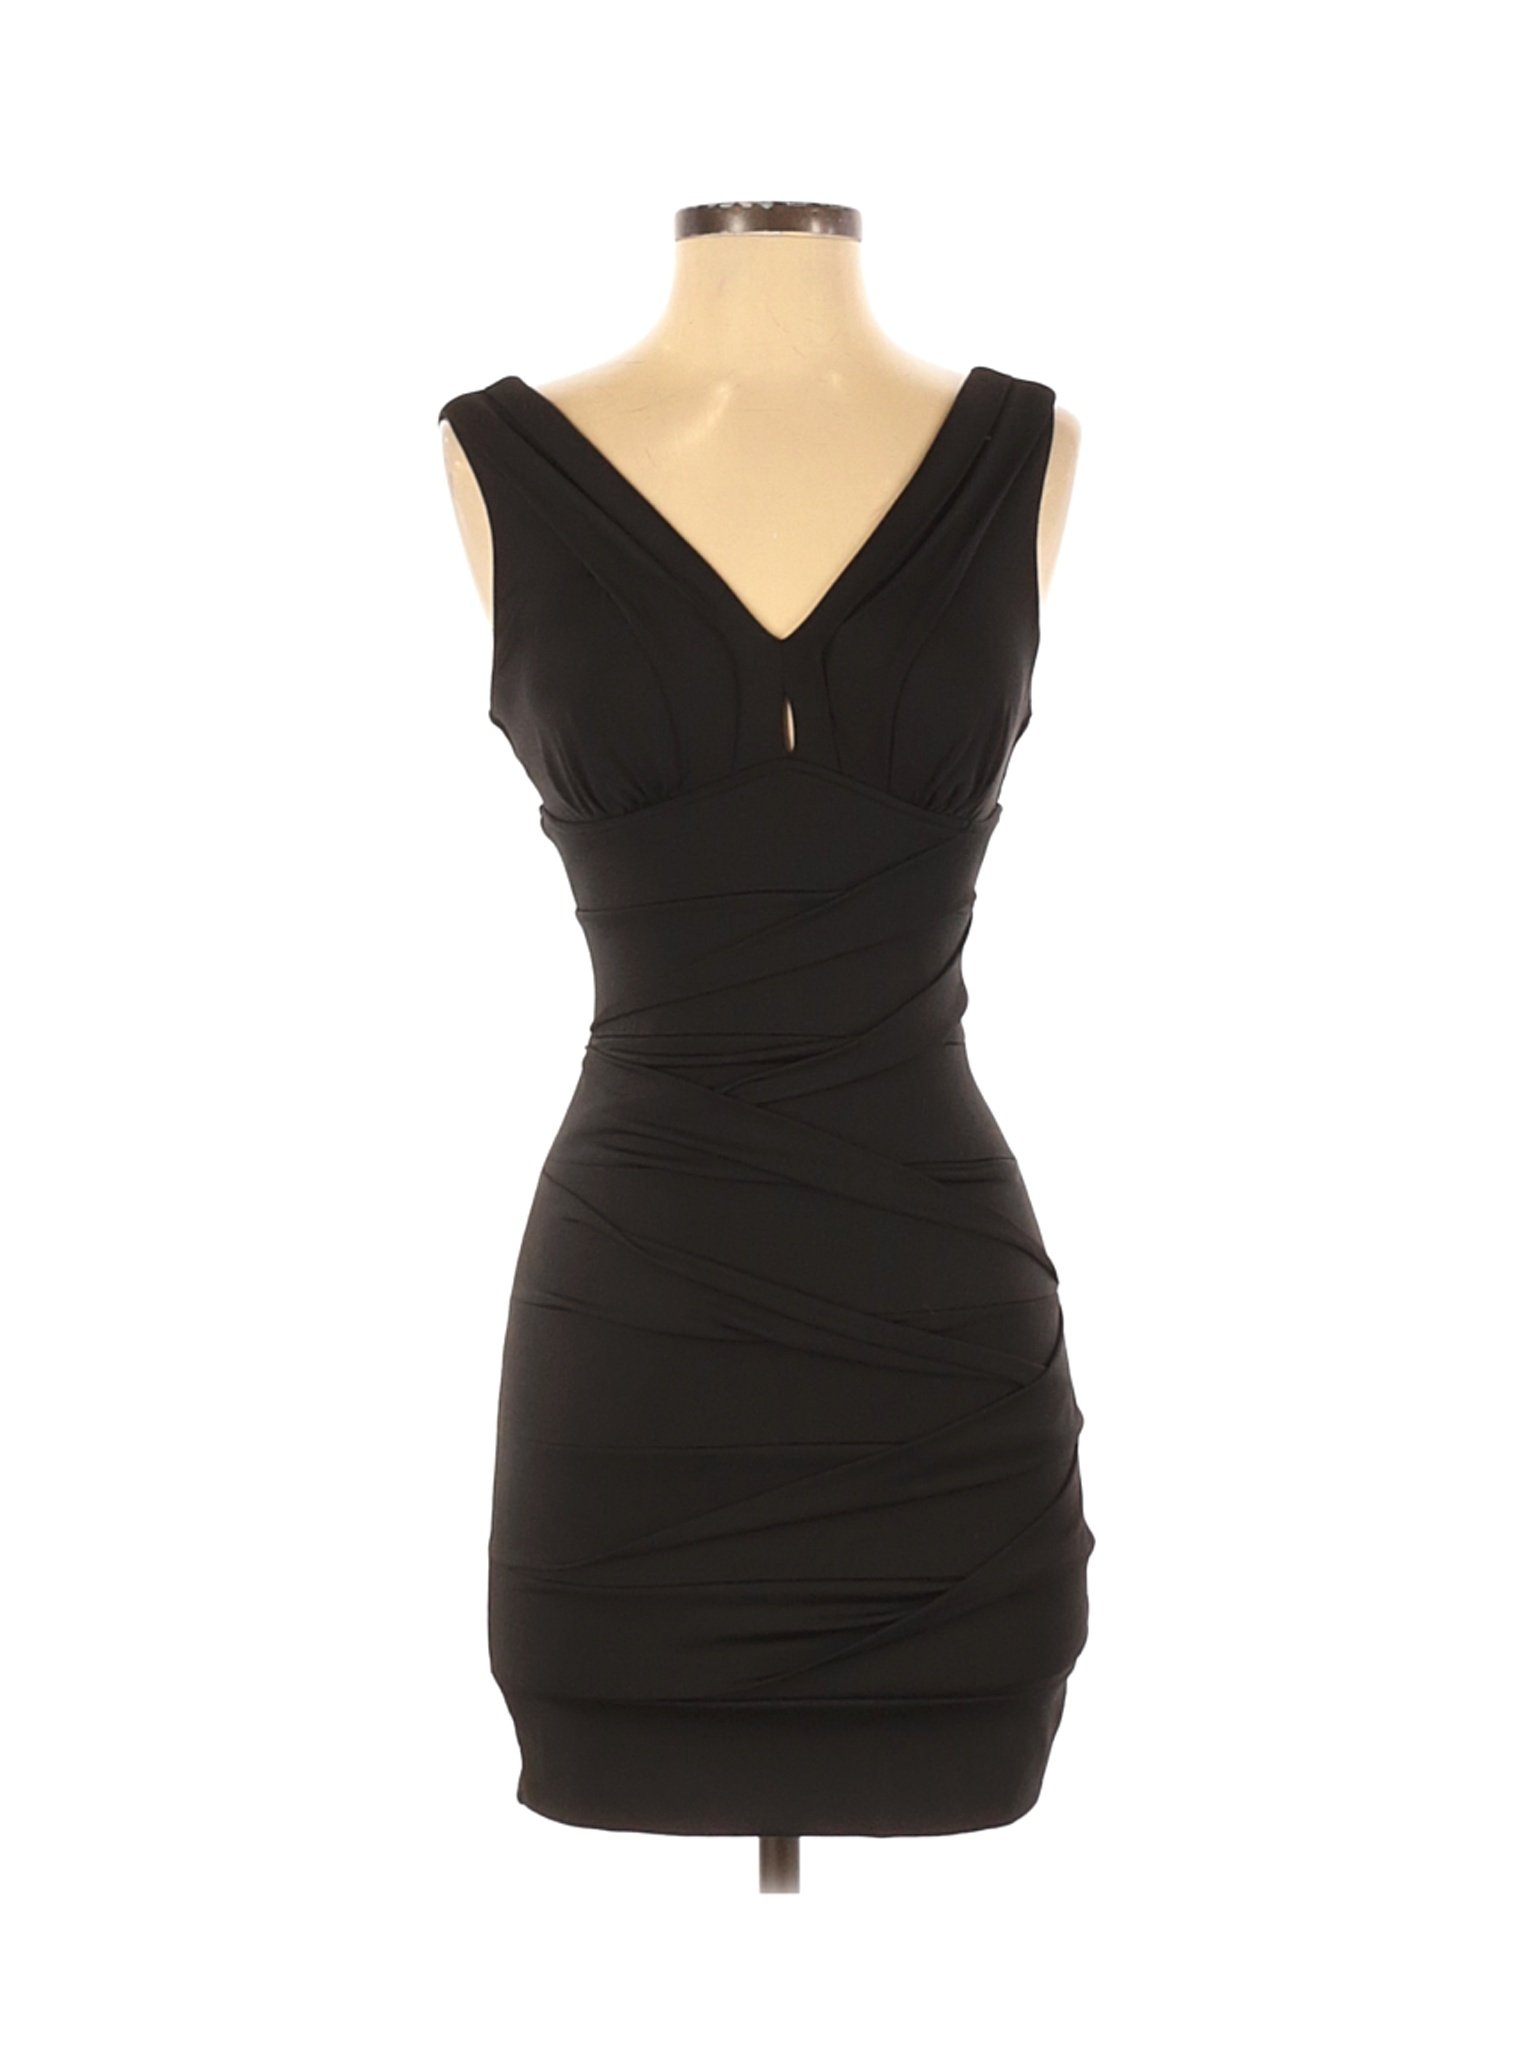 Emerald Sundae Women Black Cocktail Dress S | eBay